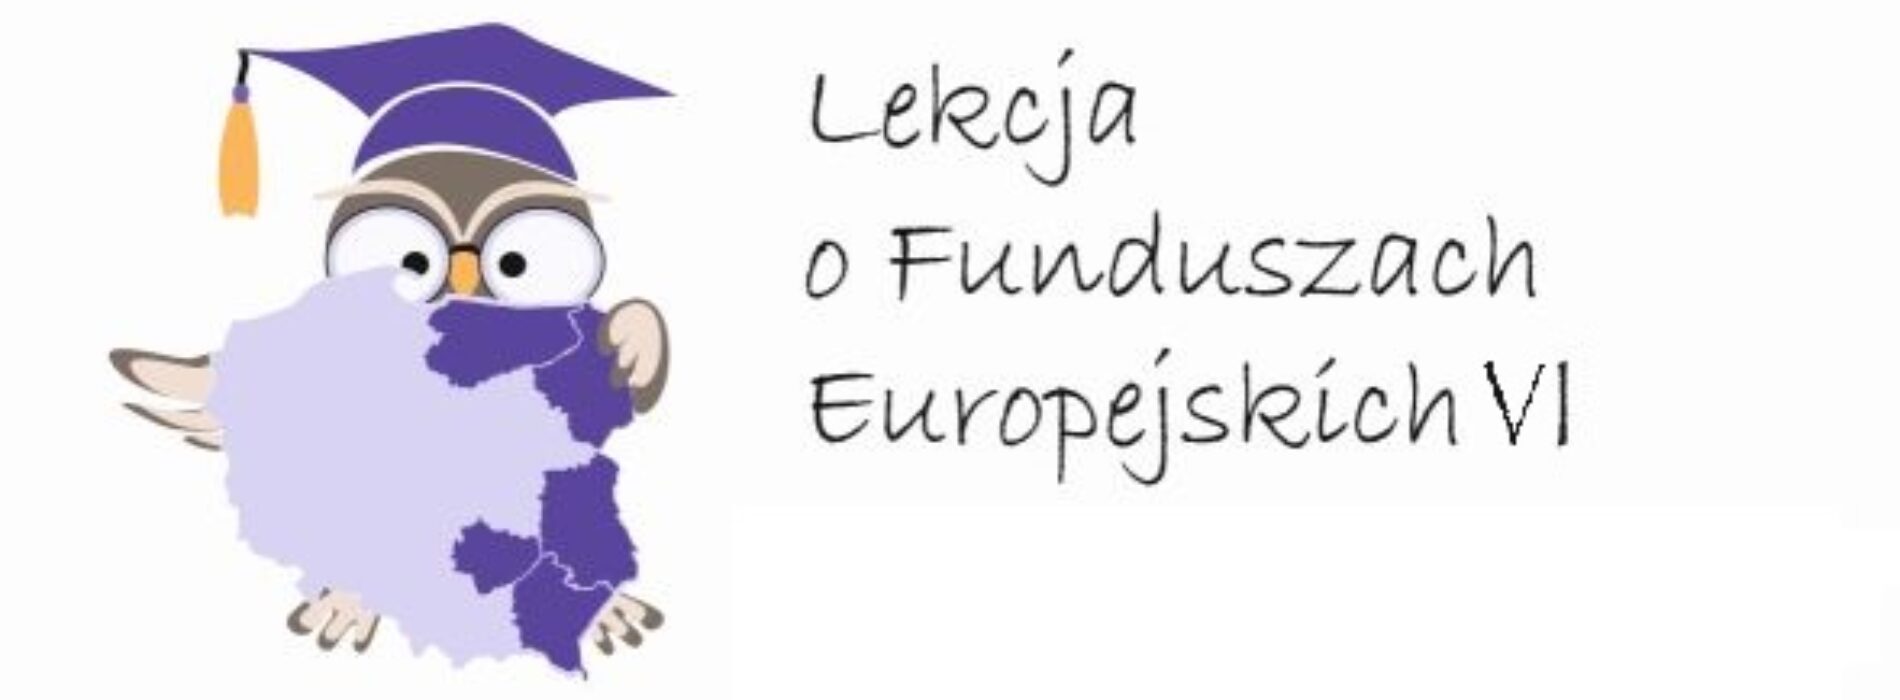 ,,Lekcja o Funduszach Europejskich” wraca do szkół